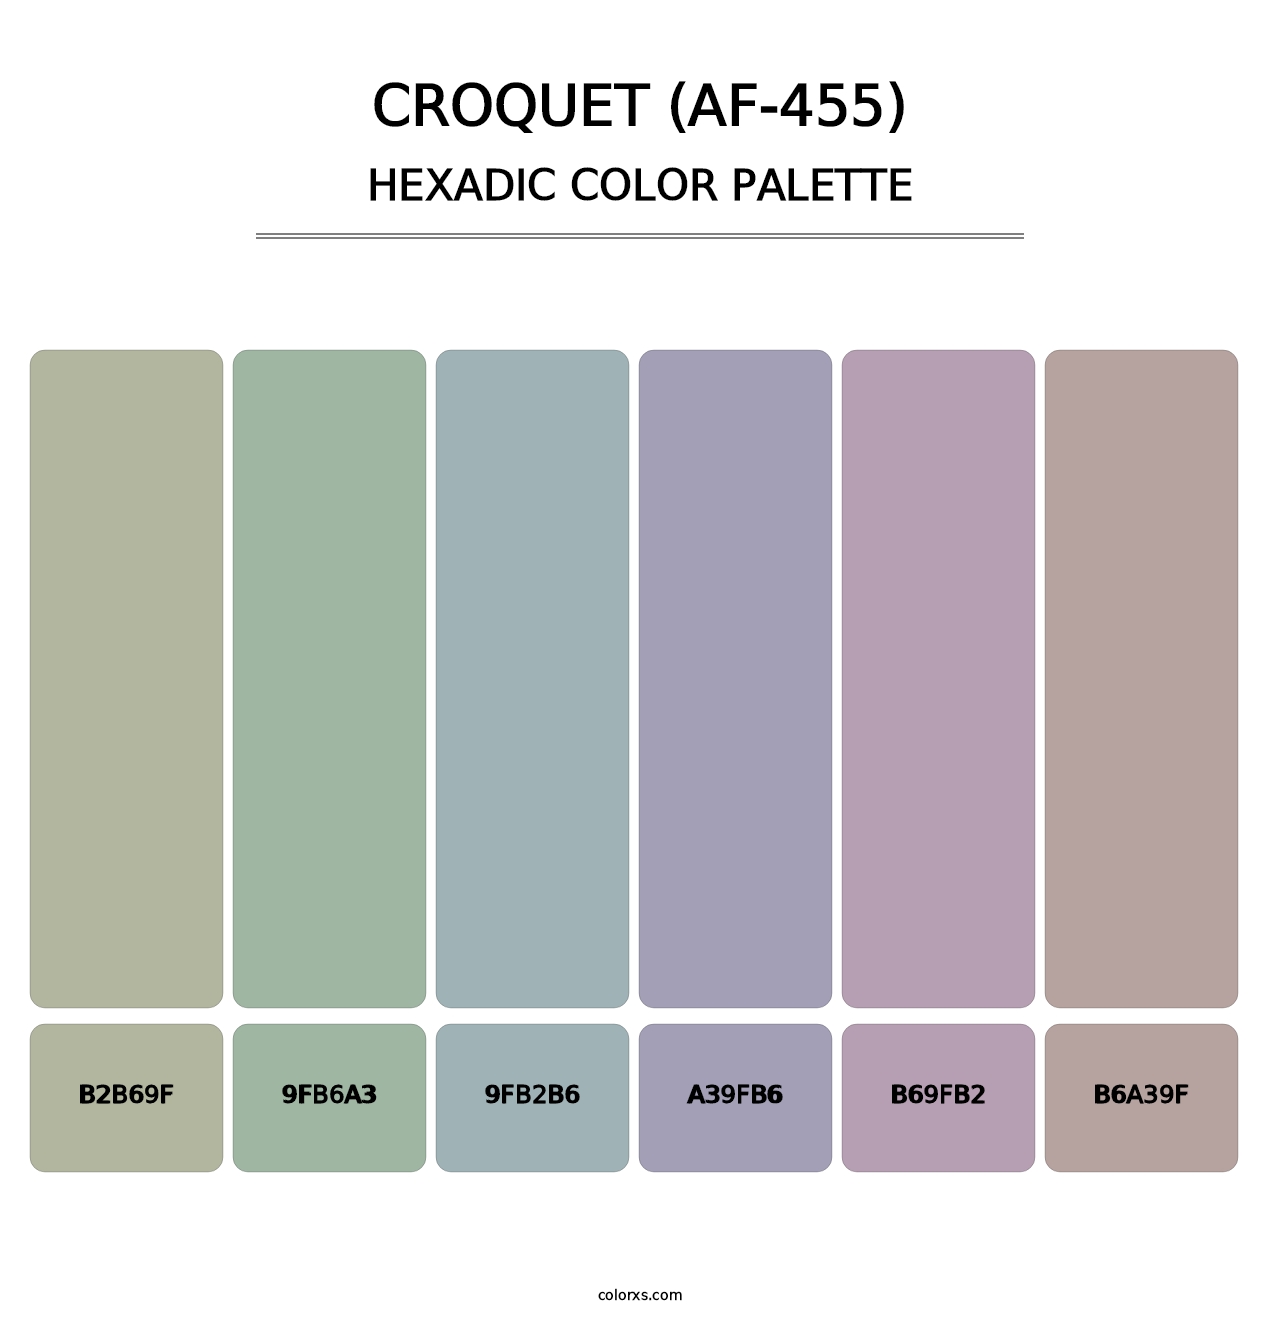 Croquet (AF-455) - Hexadic Color Palette